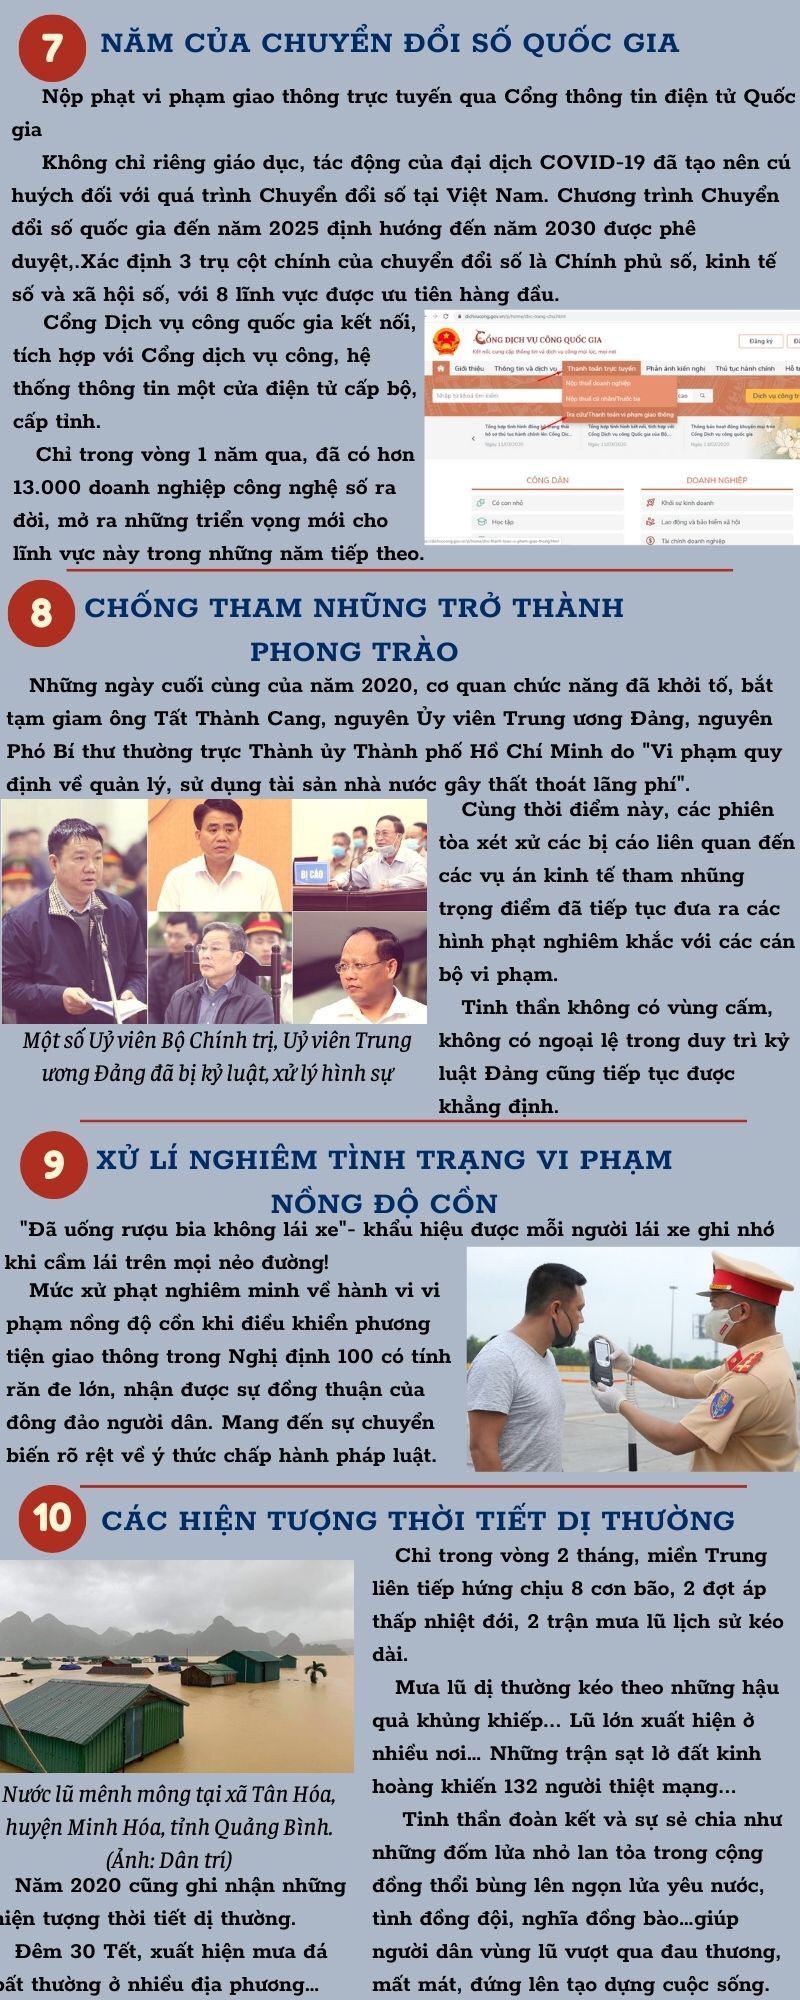 10 sự kiện nổi bật của Việt Nam năm 2020 do VTV bình chọn -2